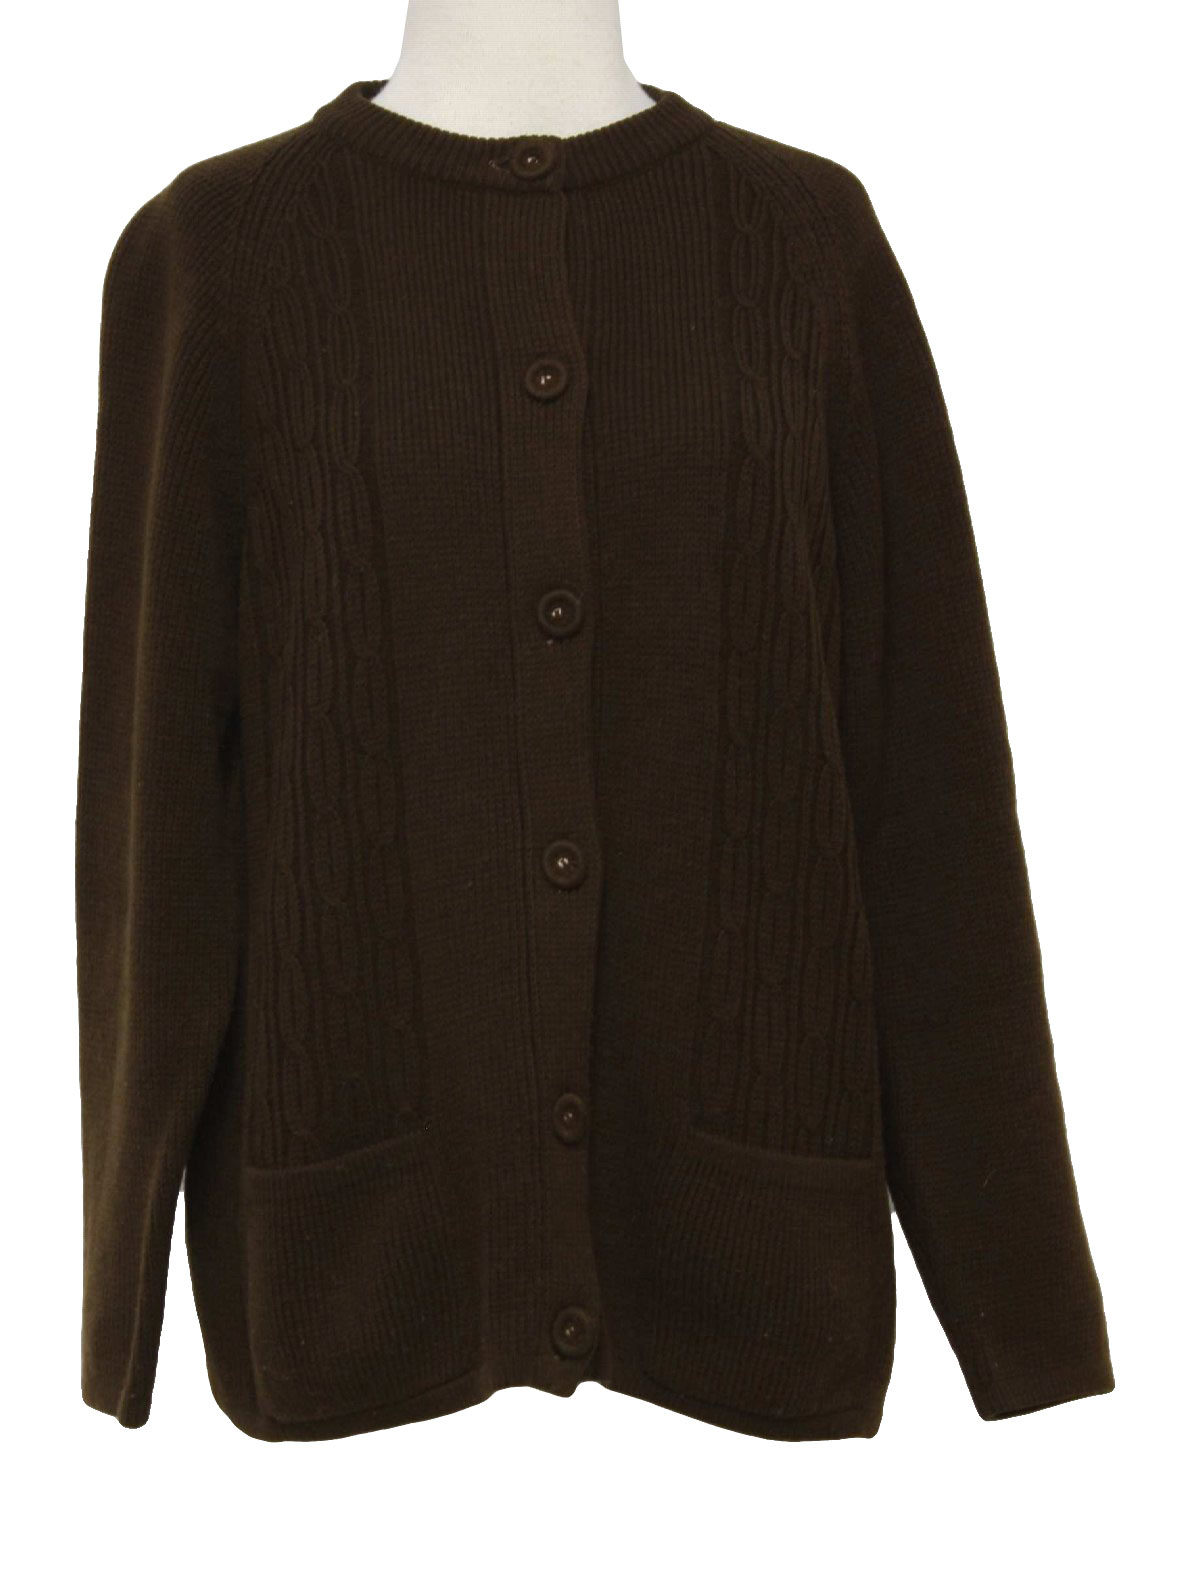 Women'S Brown Cardigan Sweater - Gray Cardigan Sweater